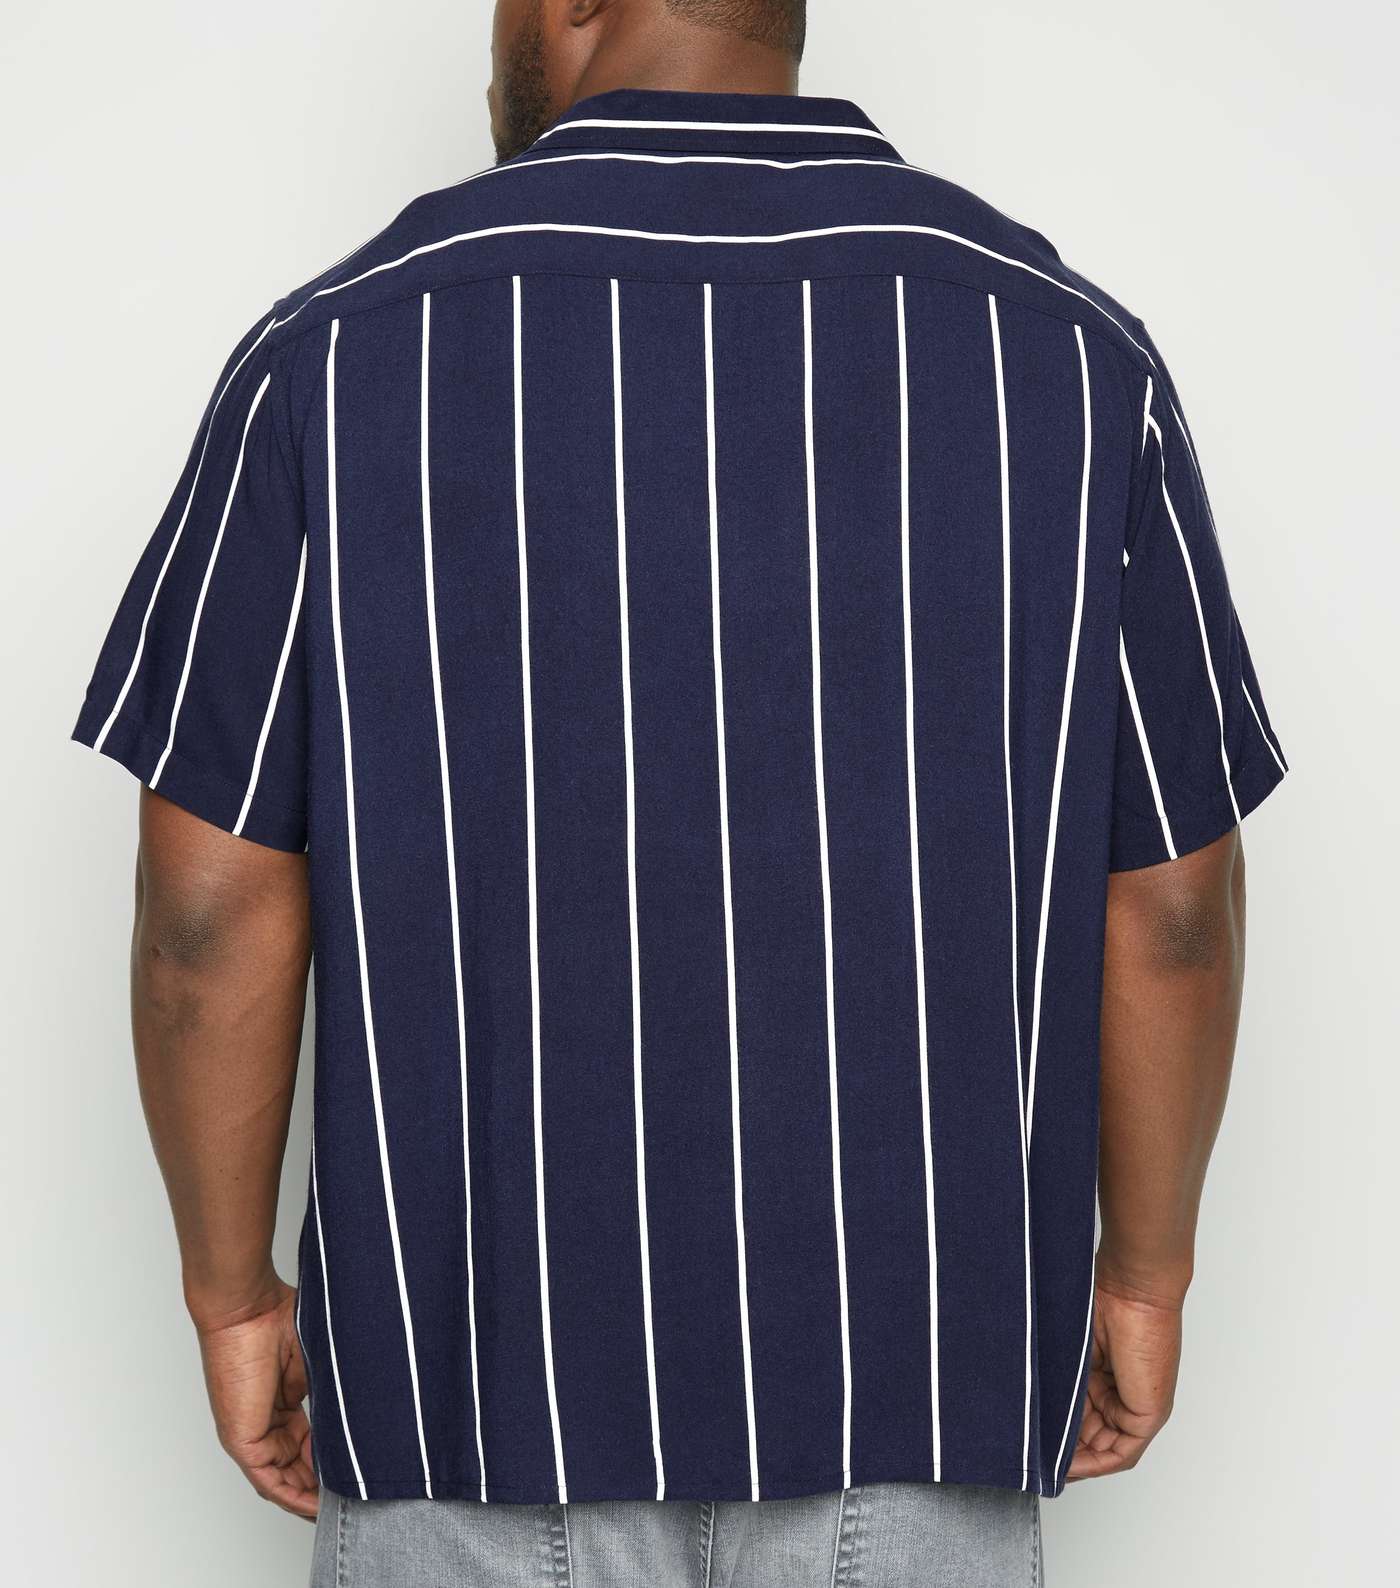 Plus Size Navy Stripe Short Sleeve Shirt Image 3